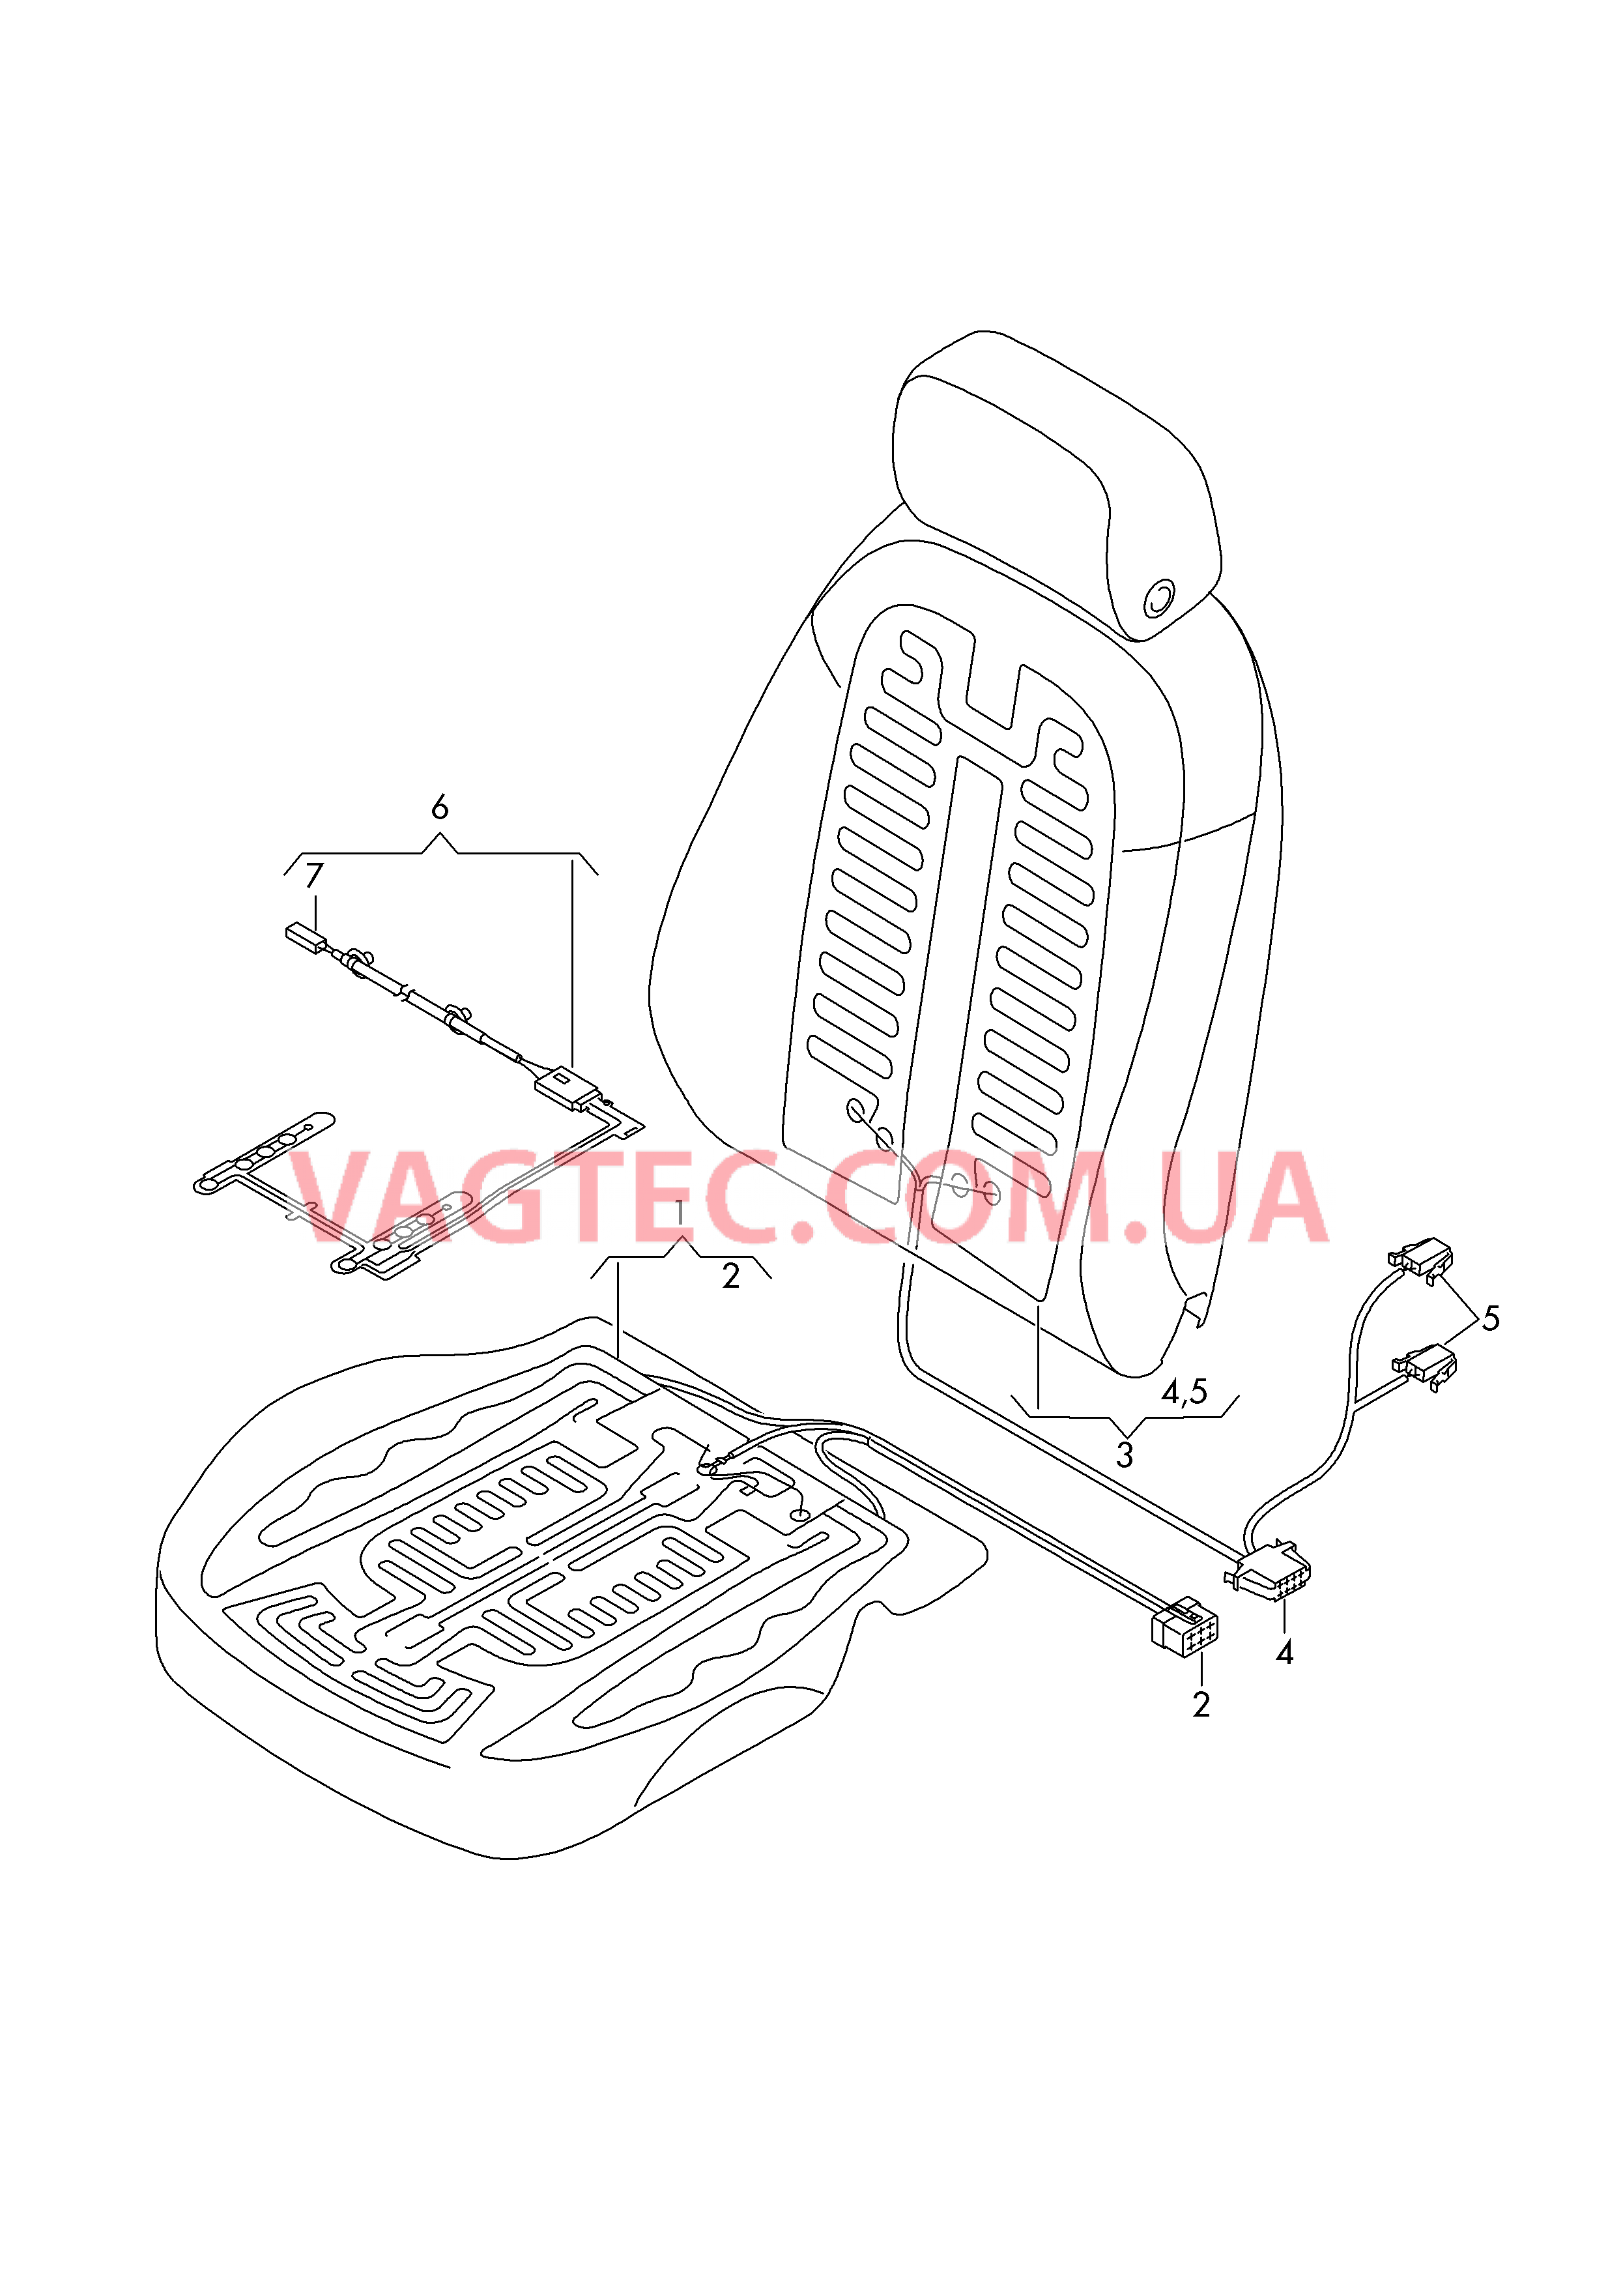 Нагревательный элемент спинки и подушки сиденья  Вставка распознавания занятости сиденья  для AUDI A7 2019